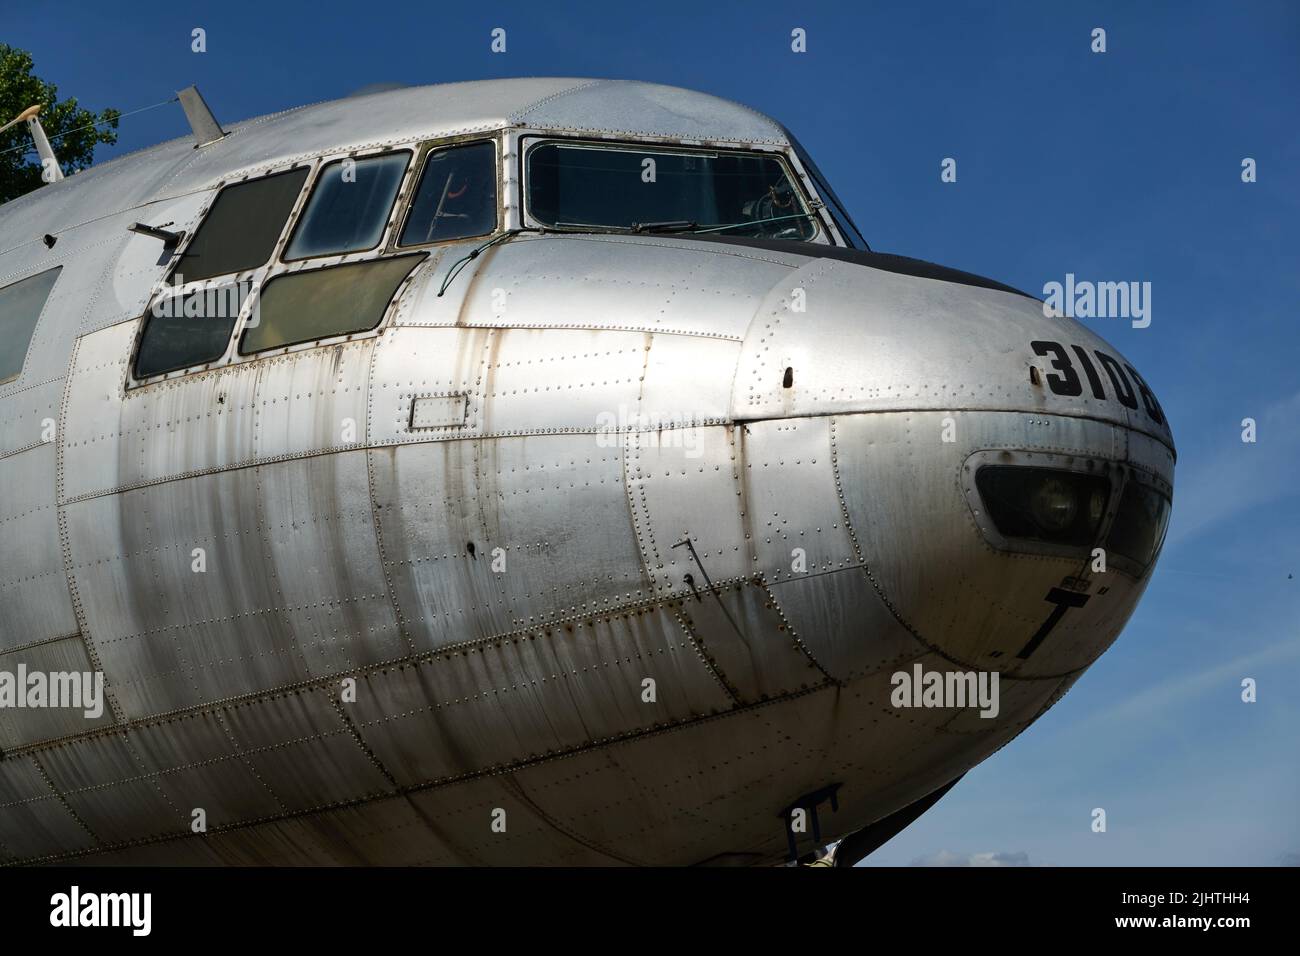 Prague, République Tchèque - 17 juin 2022 - le musée de l'Aviation Kbely - Avia AV-14T - avion de transport -1950 Banque D'Images